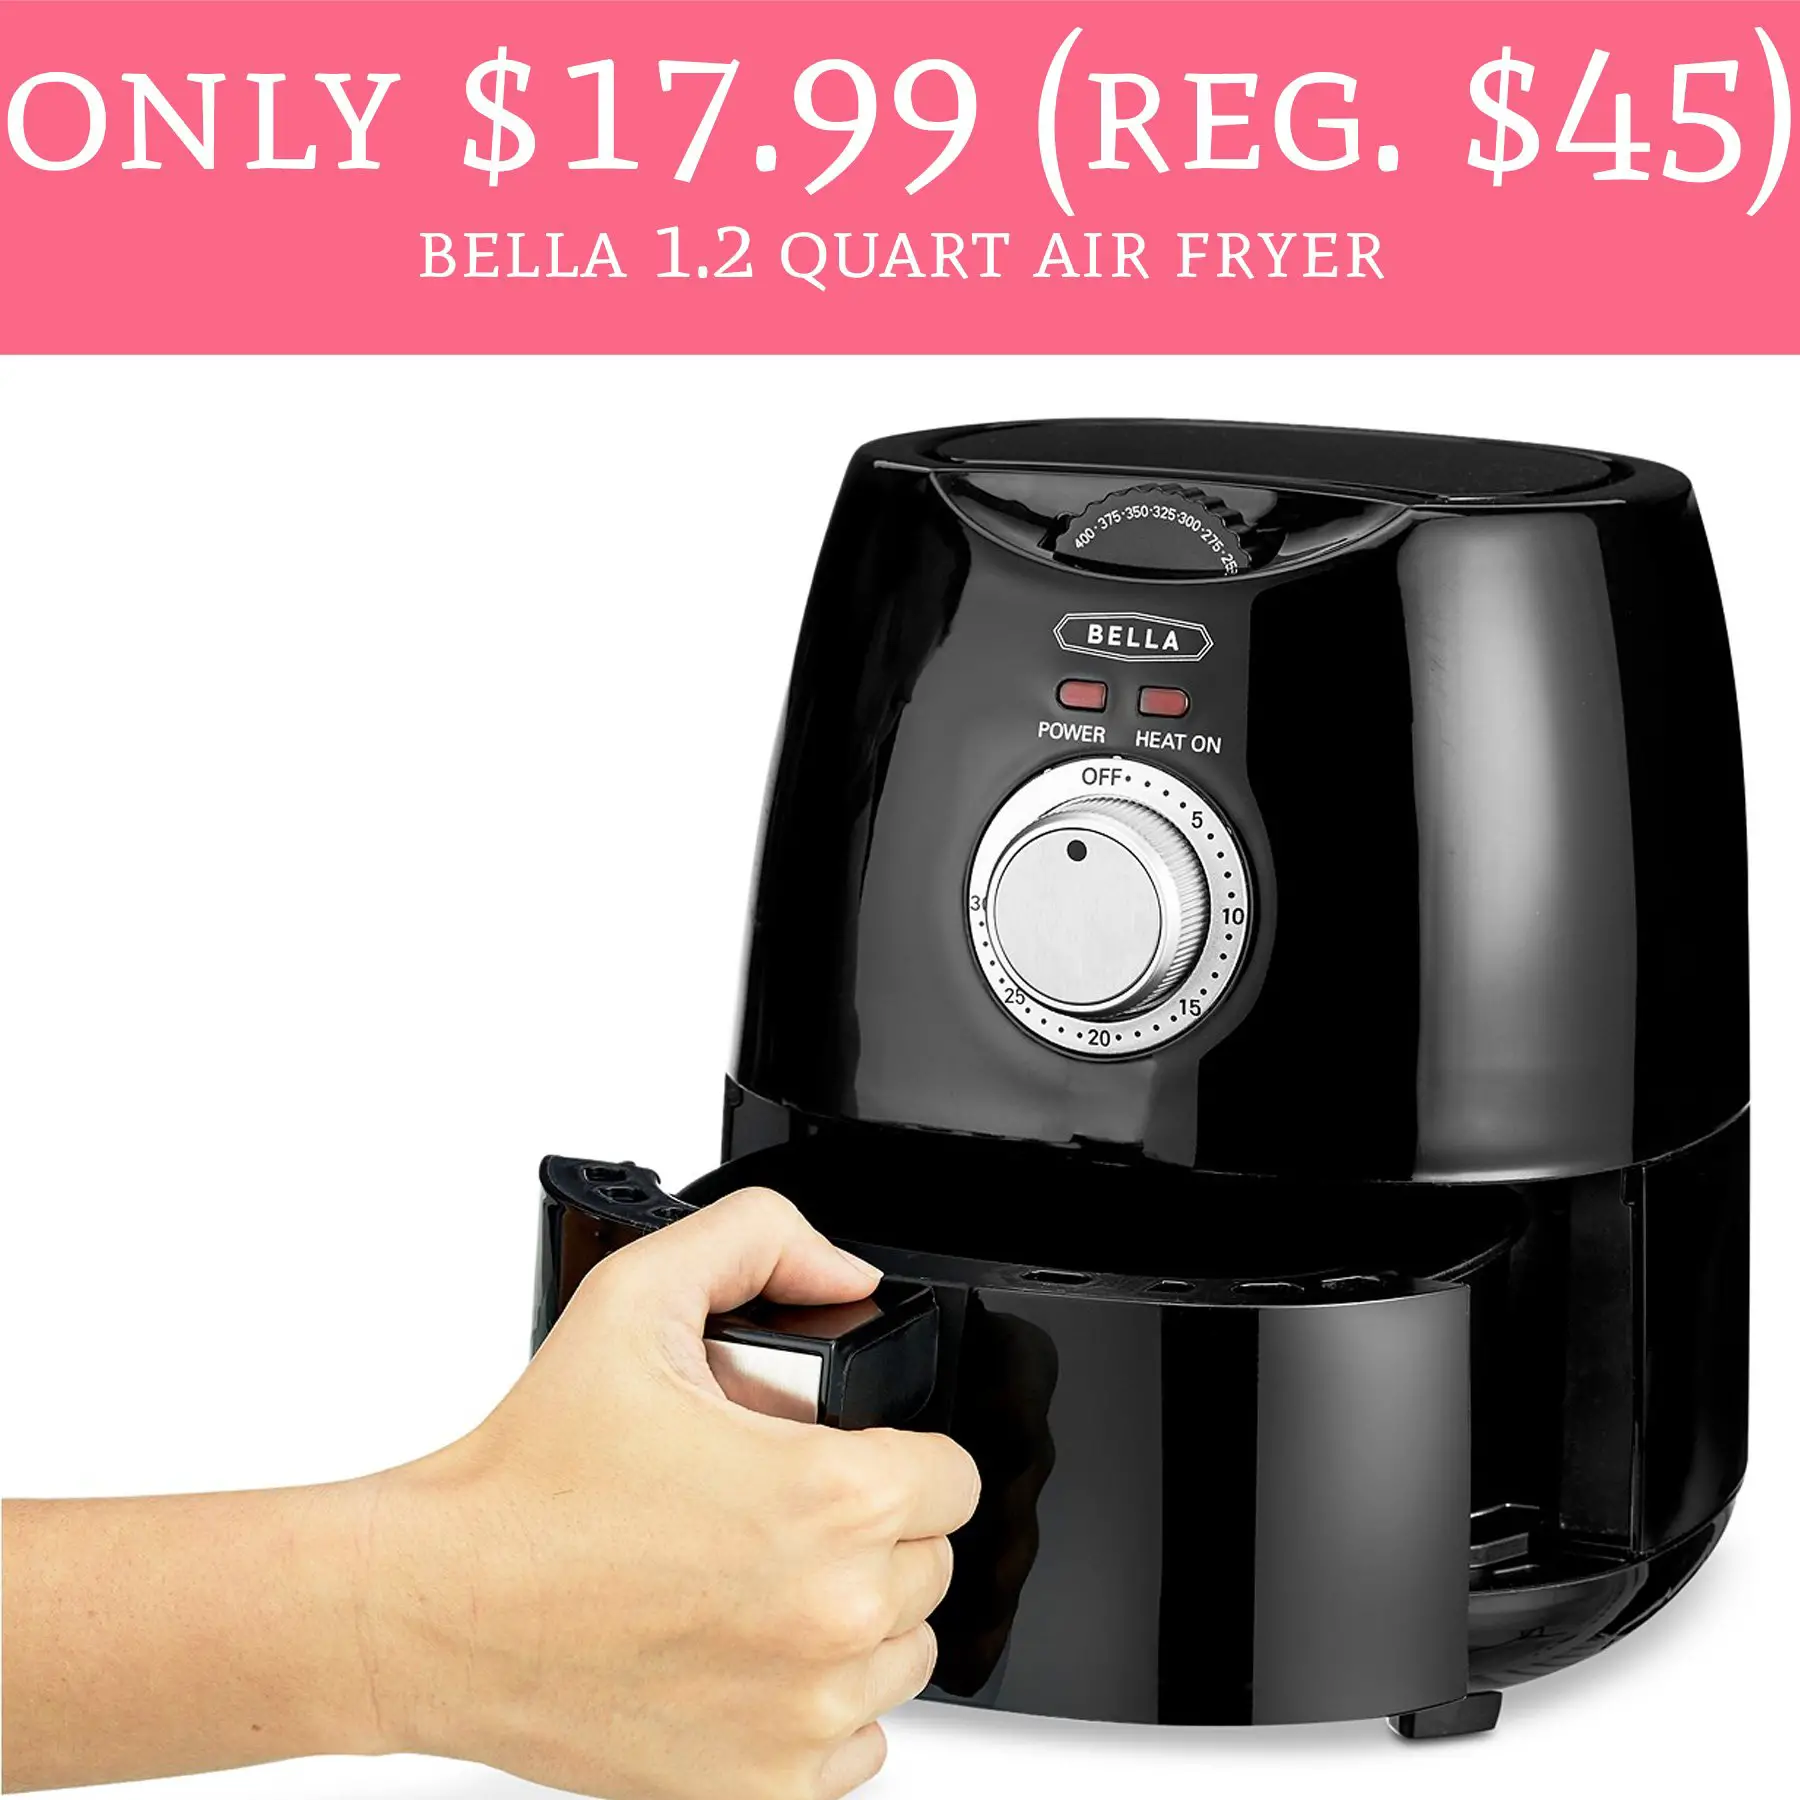 Only $17.99 (Regular $45) Bella 1.2 Quart Air Fryer